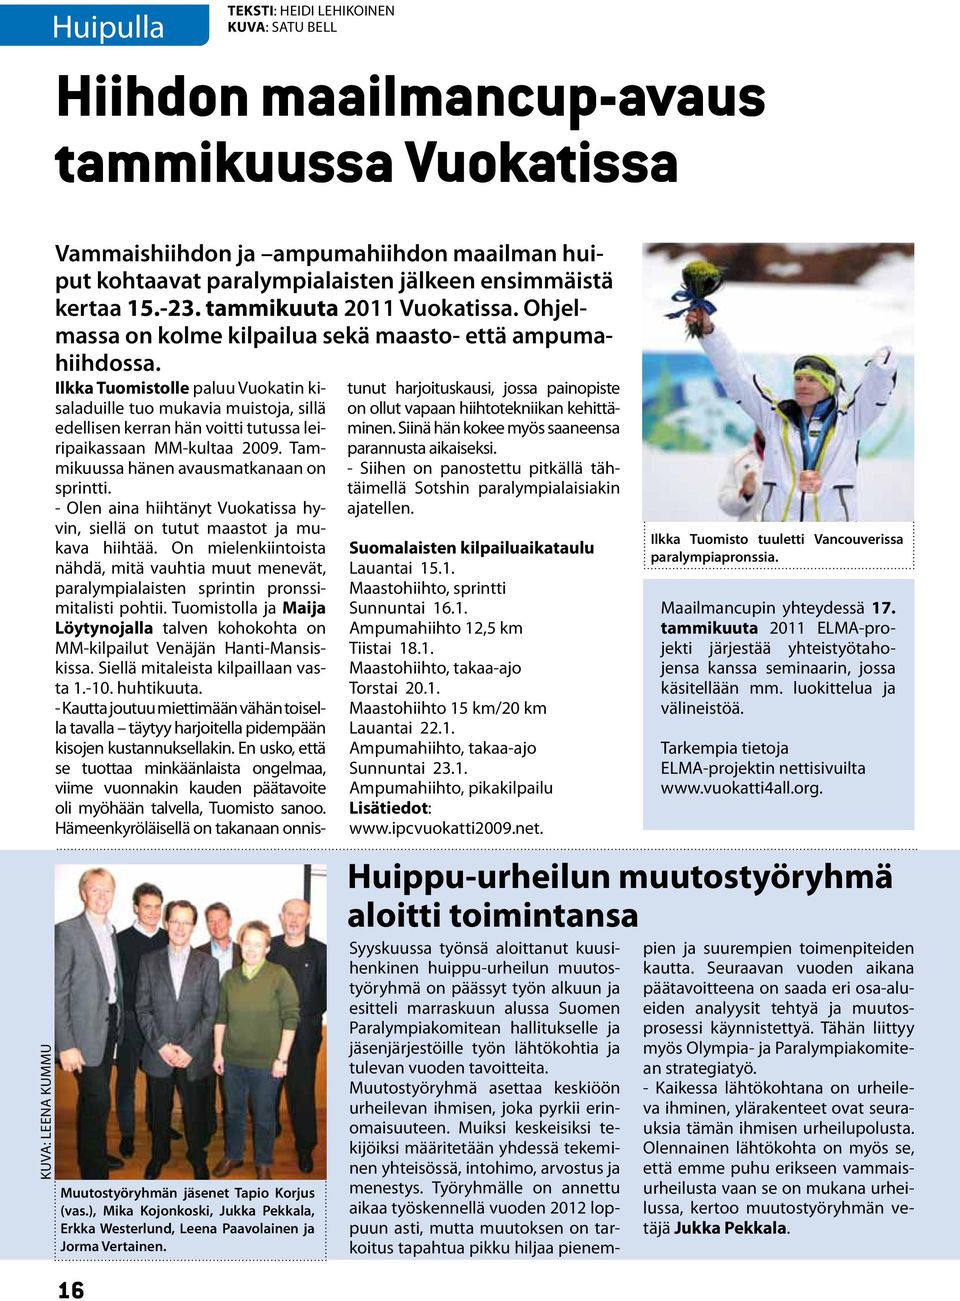 Ilkka Tuomistolle paluu Vuokatin kisaladuille tuo mukavia muistoja, sillä edellisen kerran hän voitti tutussa leiripaikassaan MM-kultaa 2009. Tammikuussa hänen avausmatkanaan on sprintti.